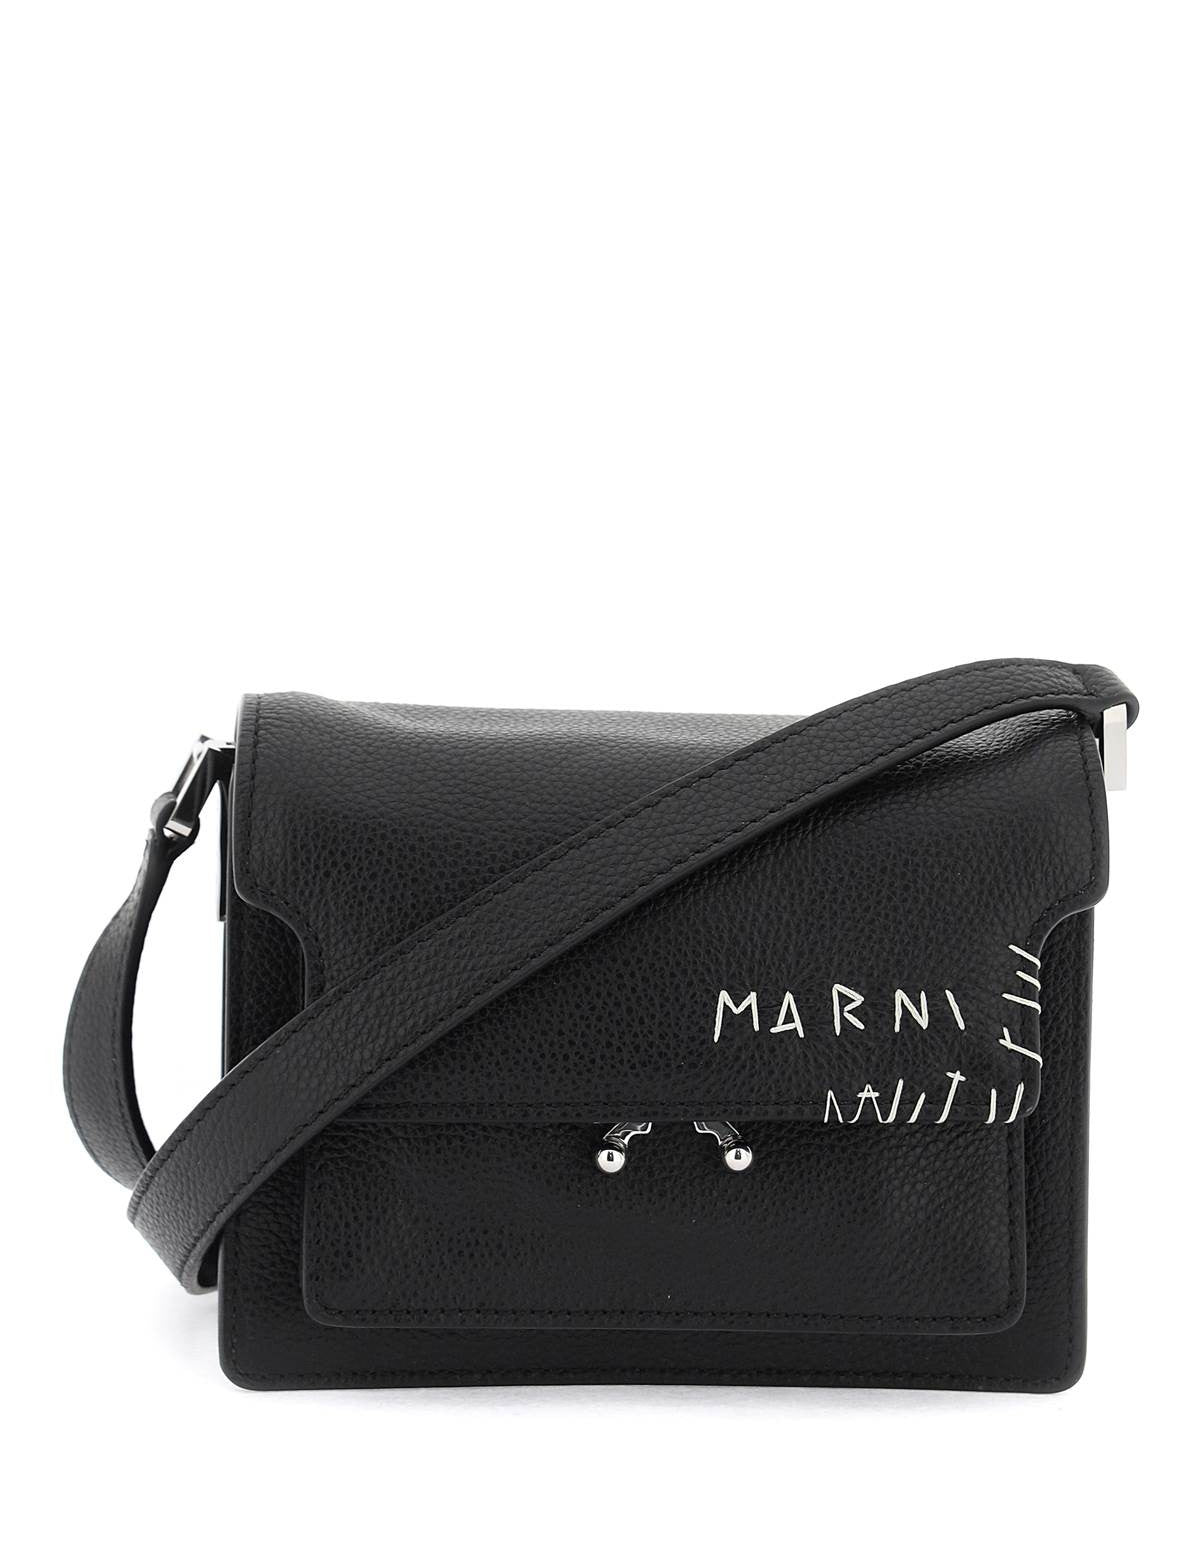 marni-mini-soft-trunk-shoulder-bag_507f3e19-76bf-474d-978a-37561cd54d47.jpg